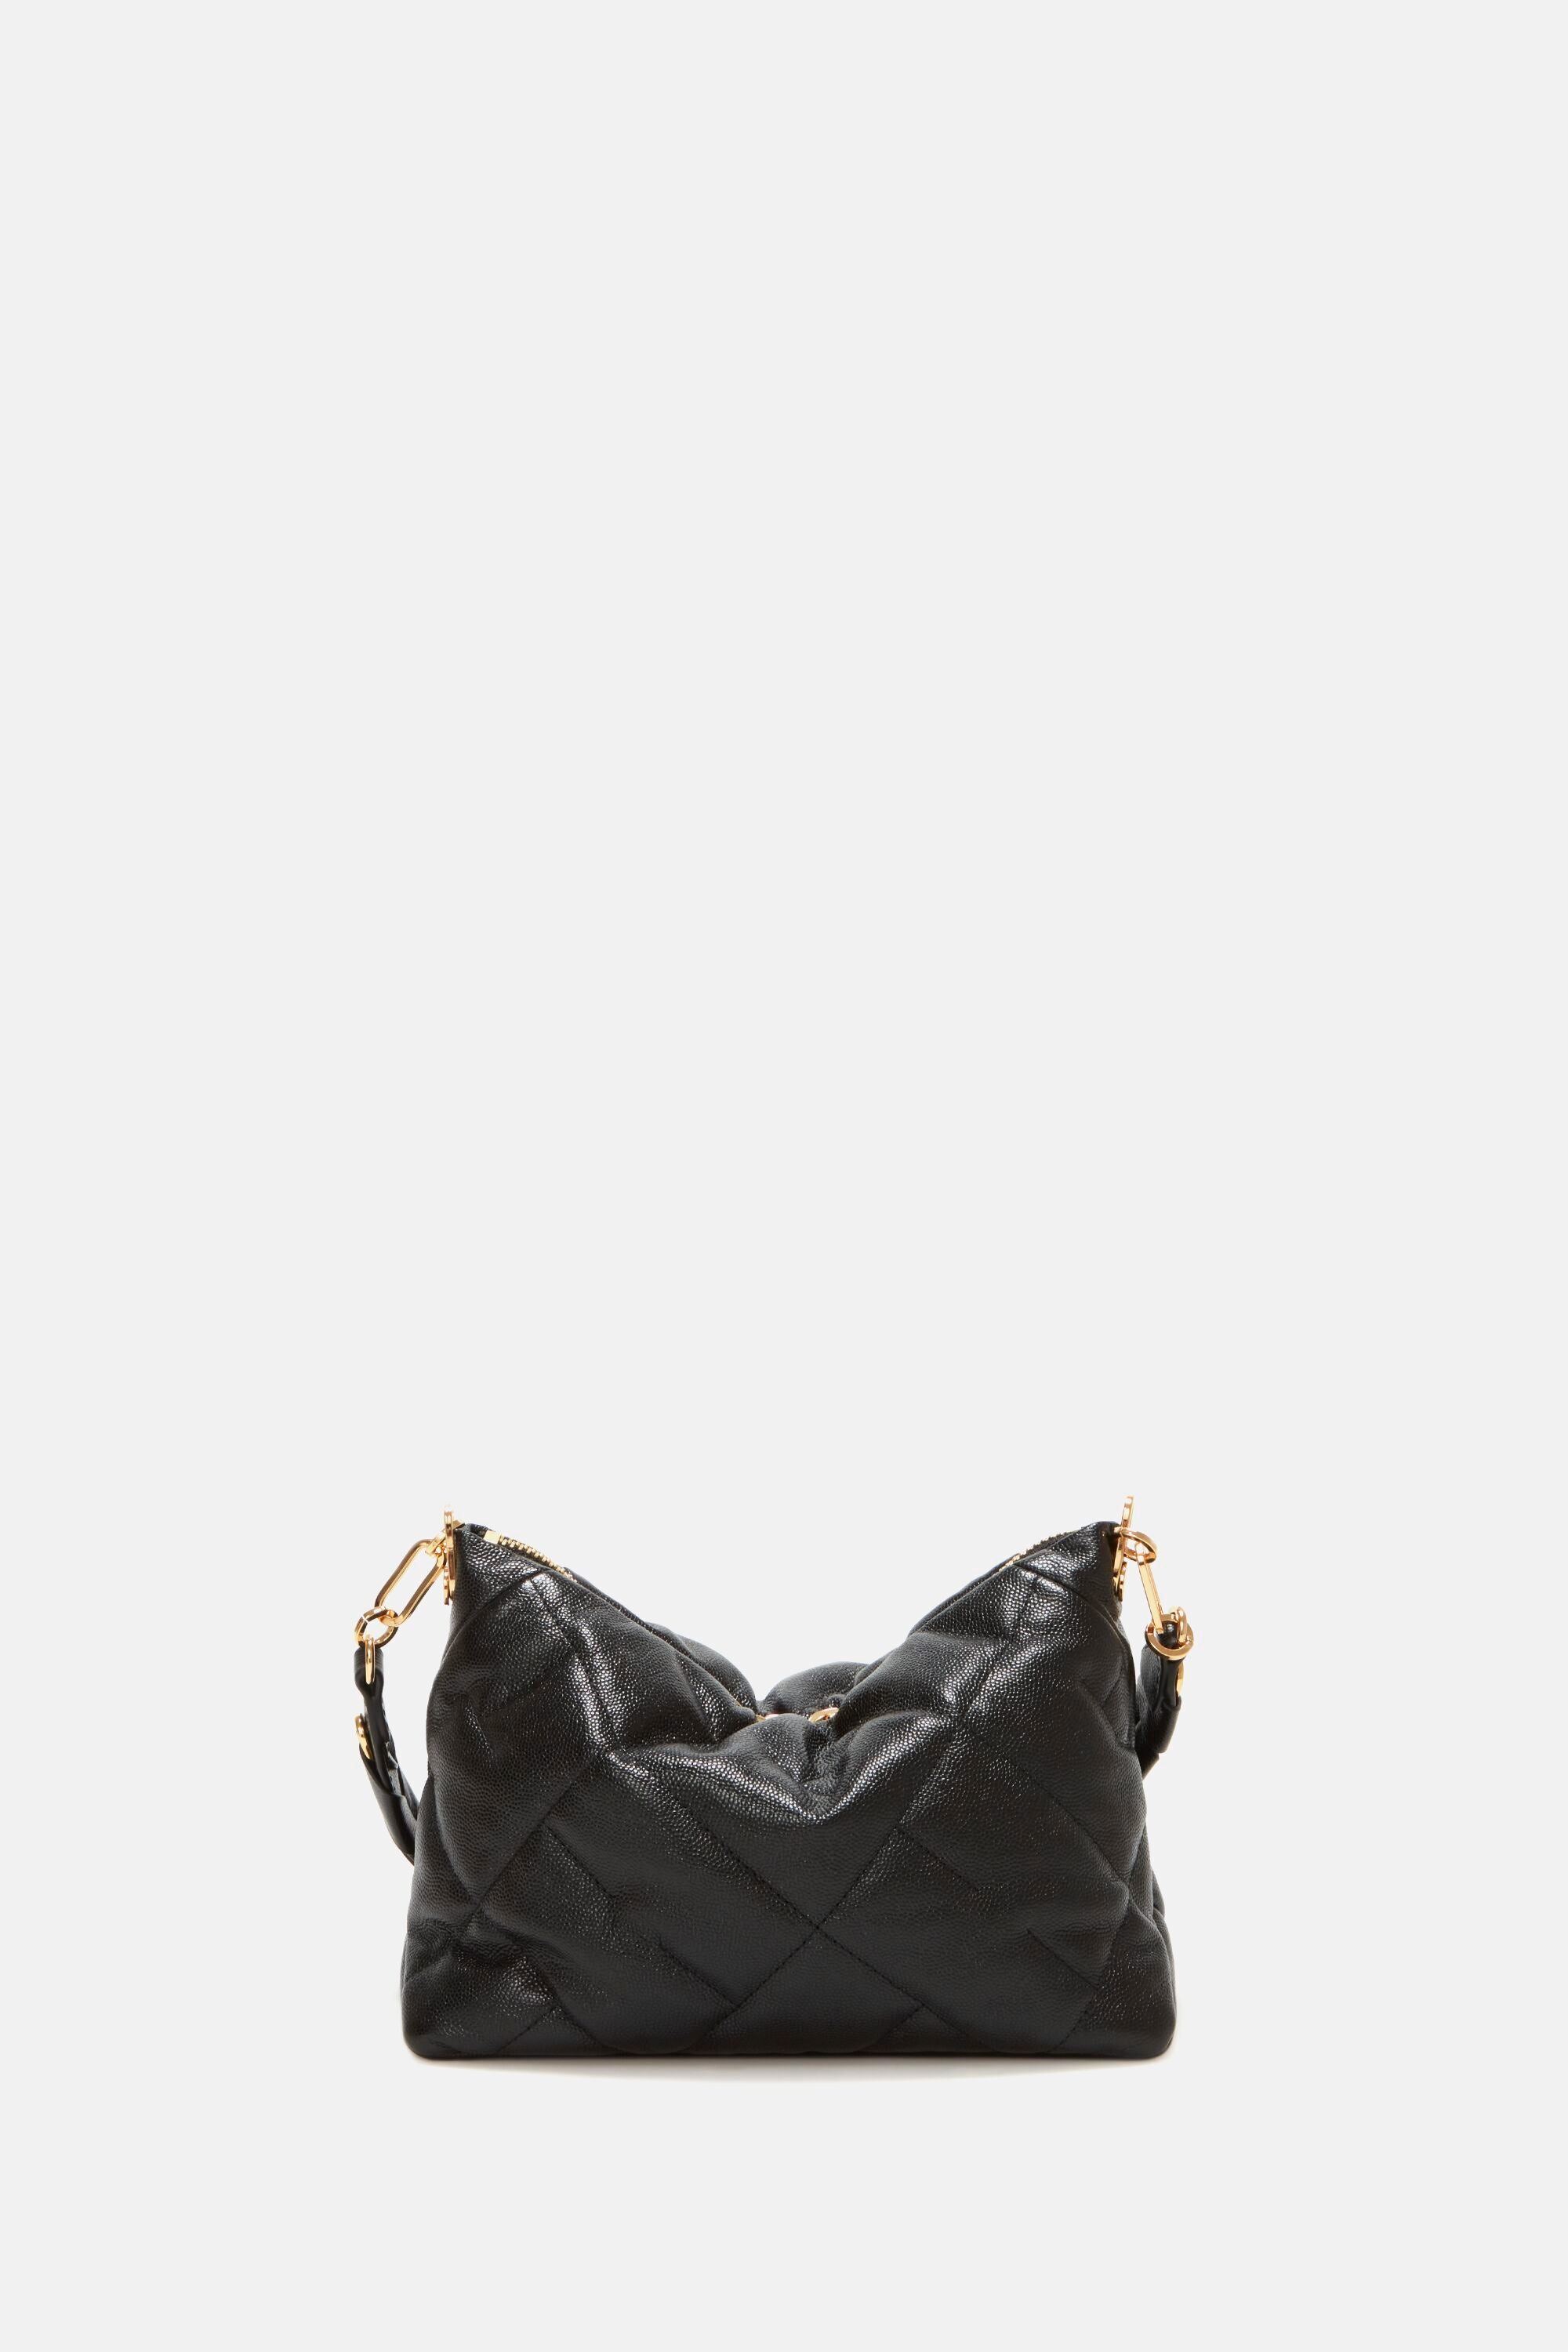 Black Soft Hobo Shoulder Bag